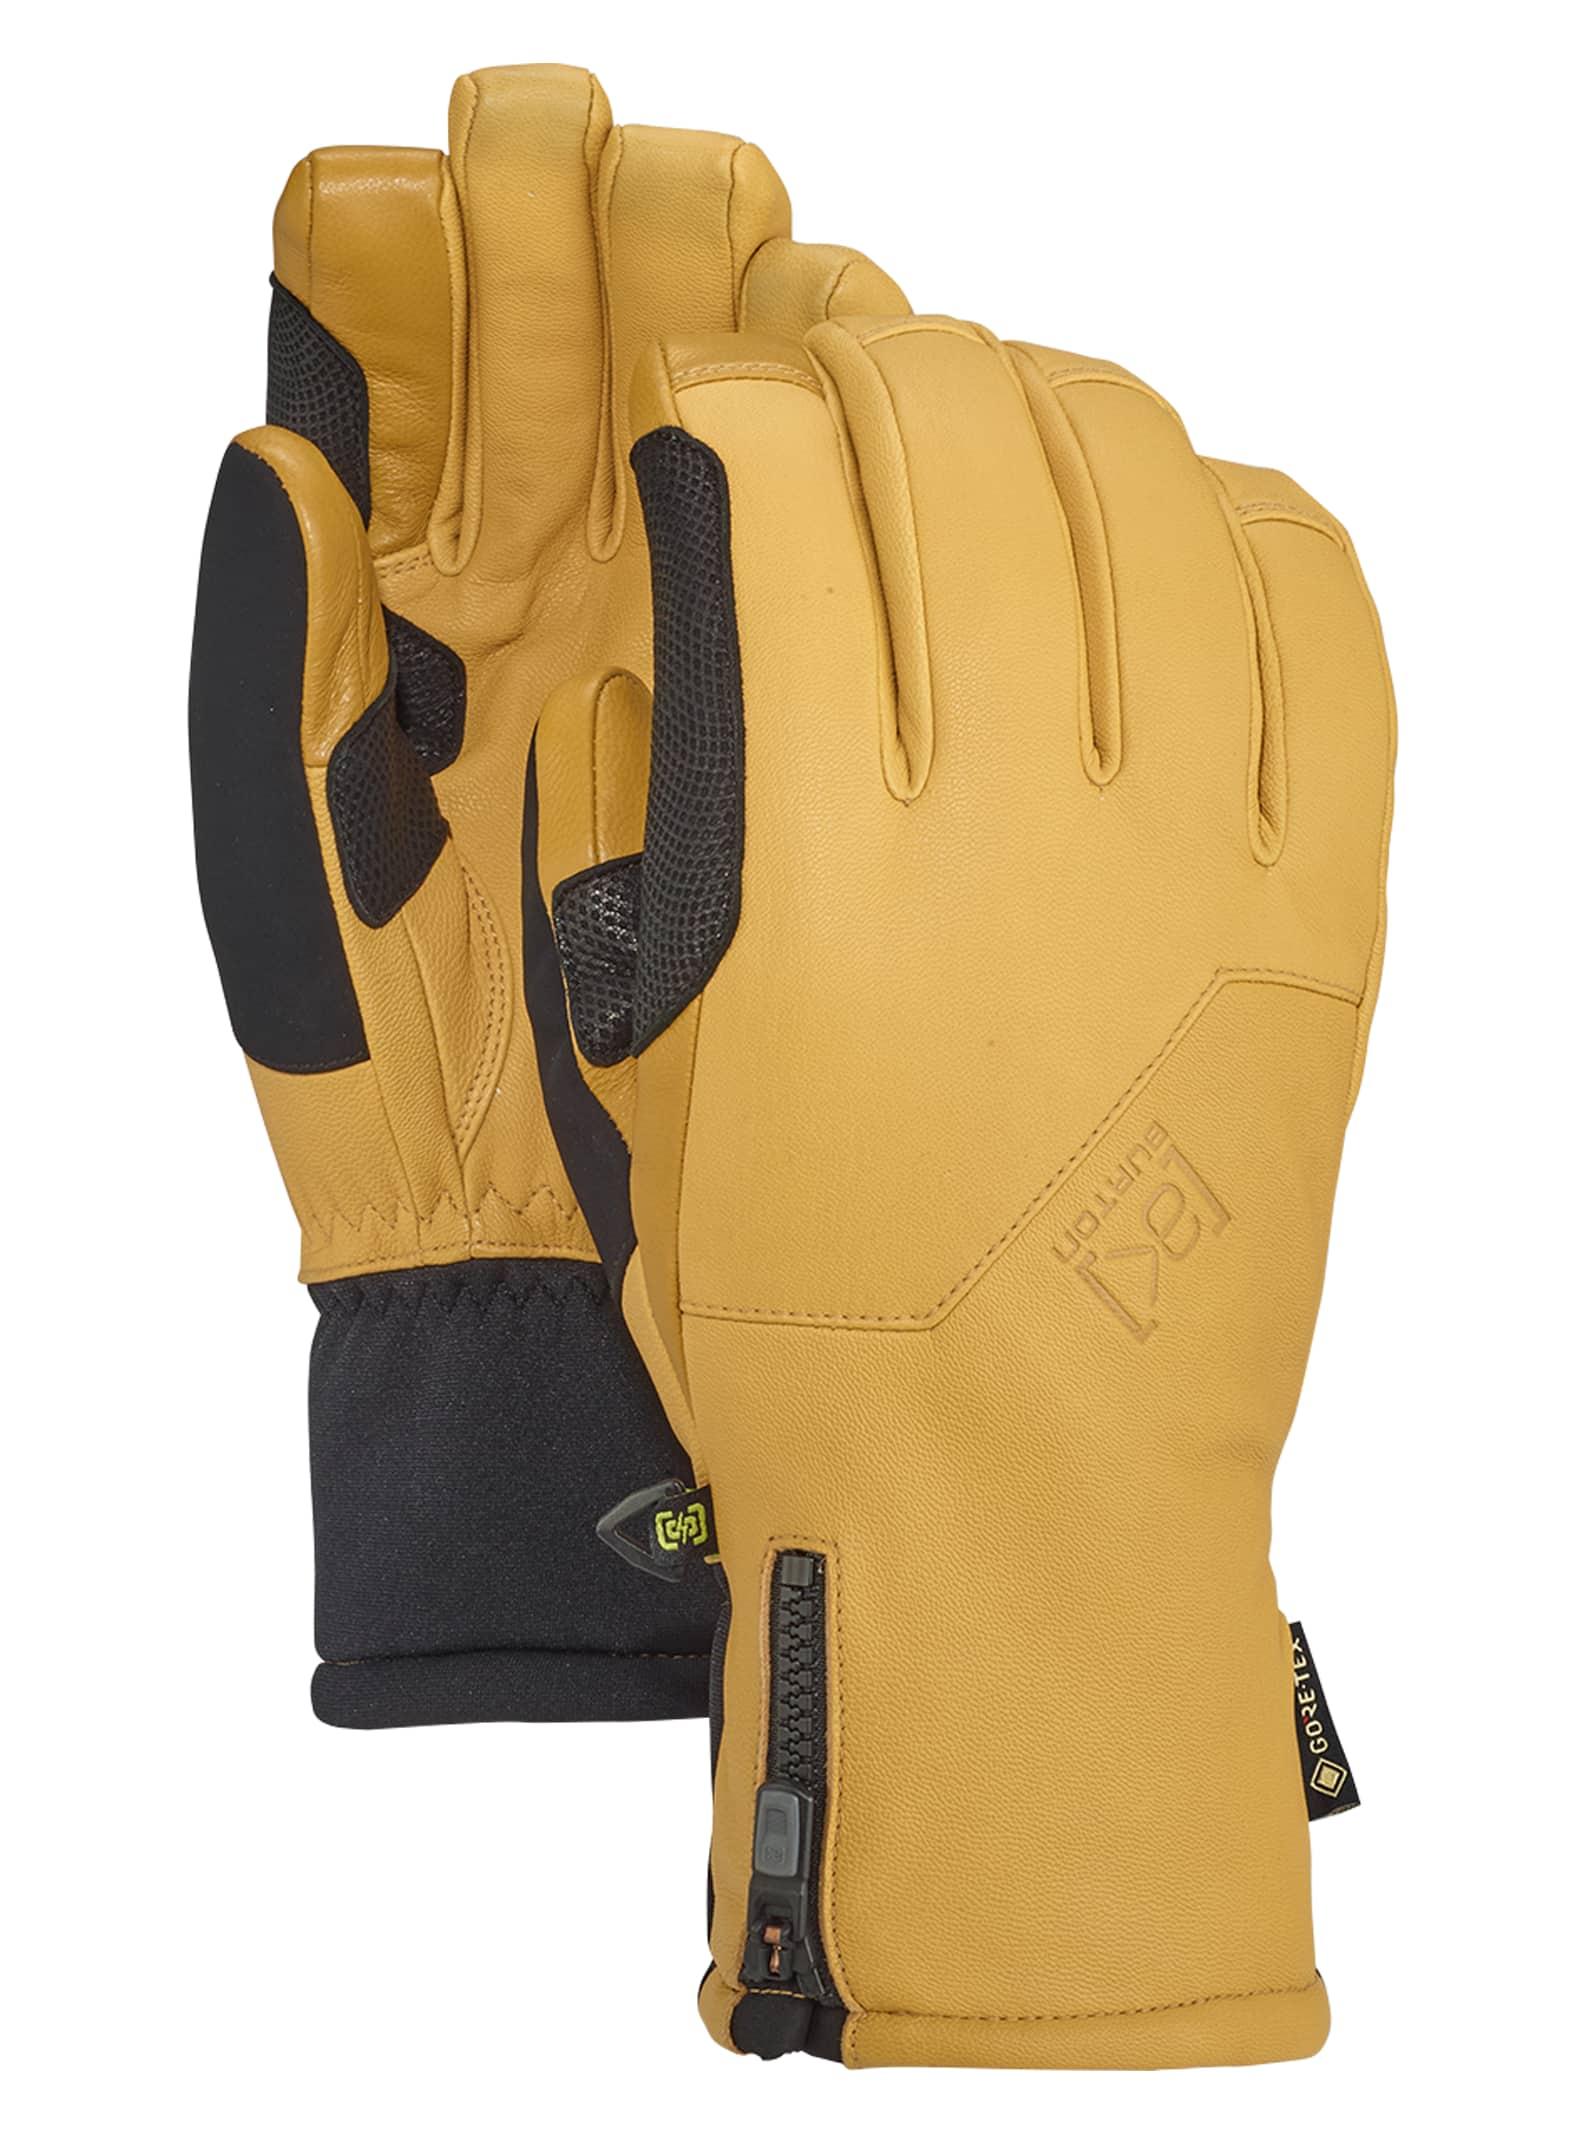 Men's Gloves & Mittens | Burton Snowboards US